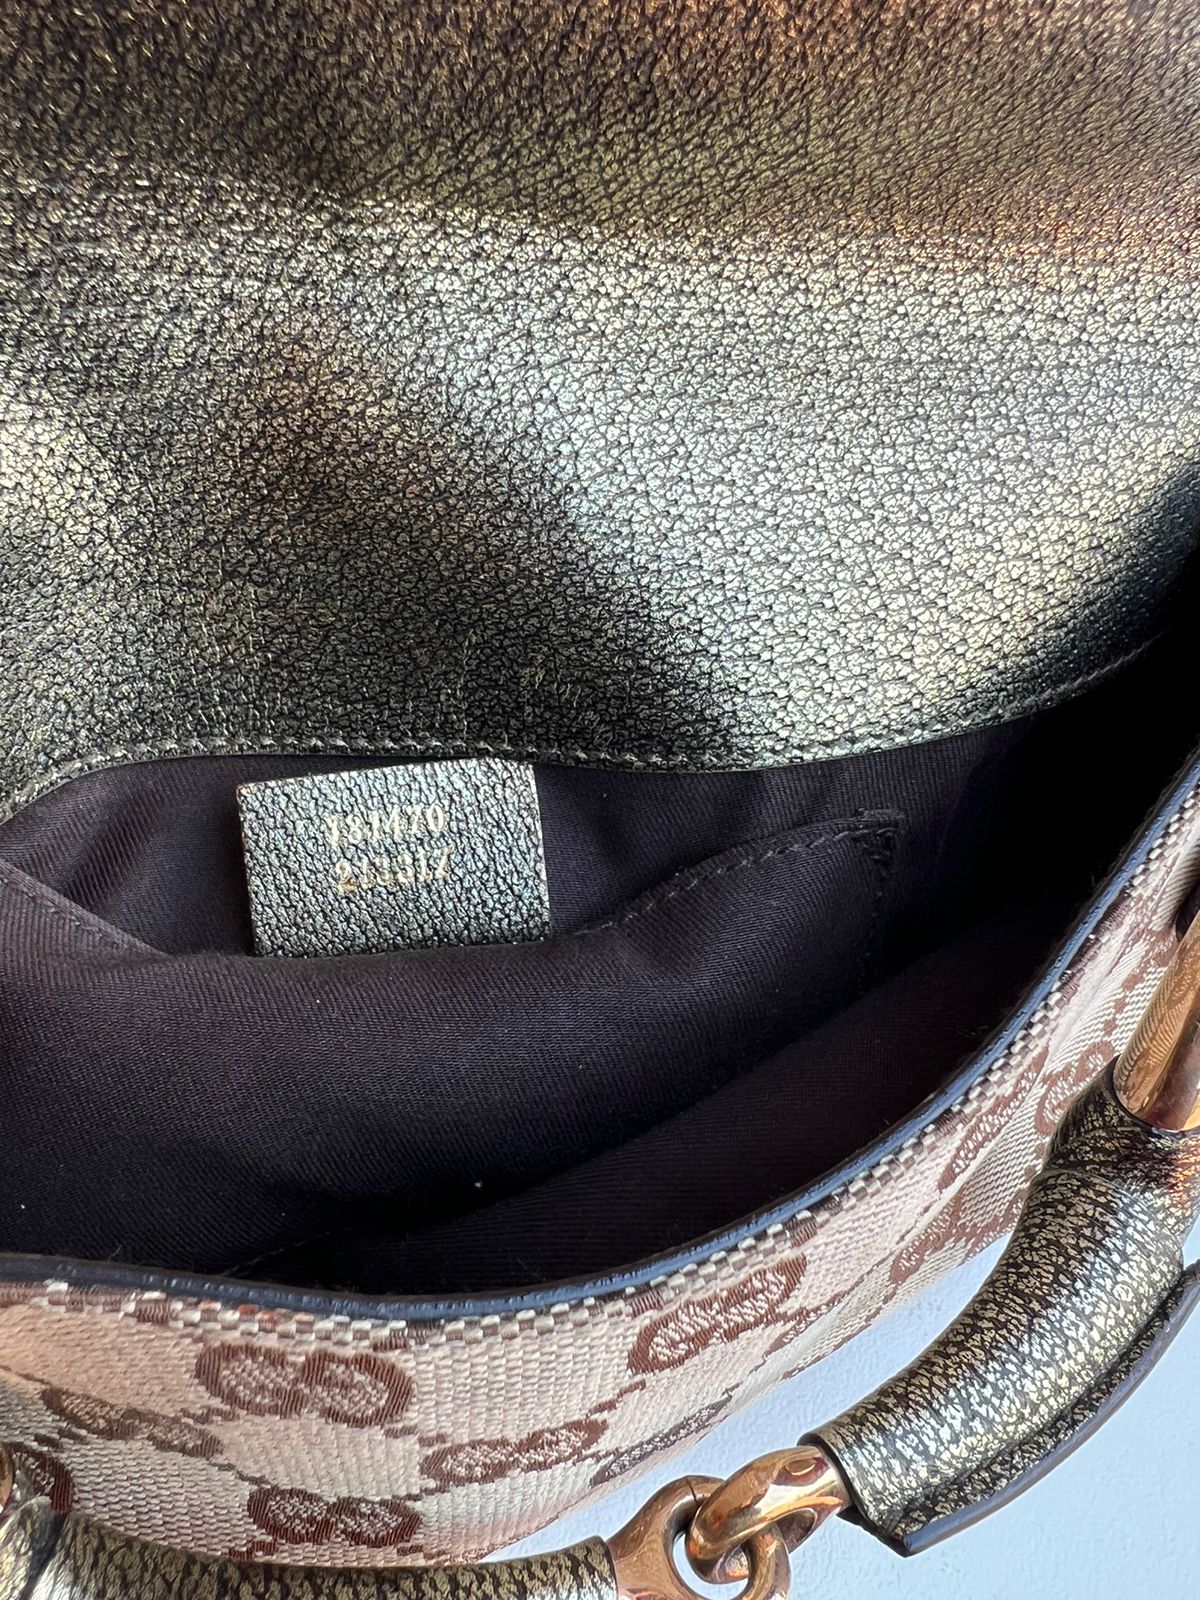 Leather Chain Shoulder Bag